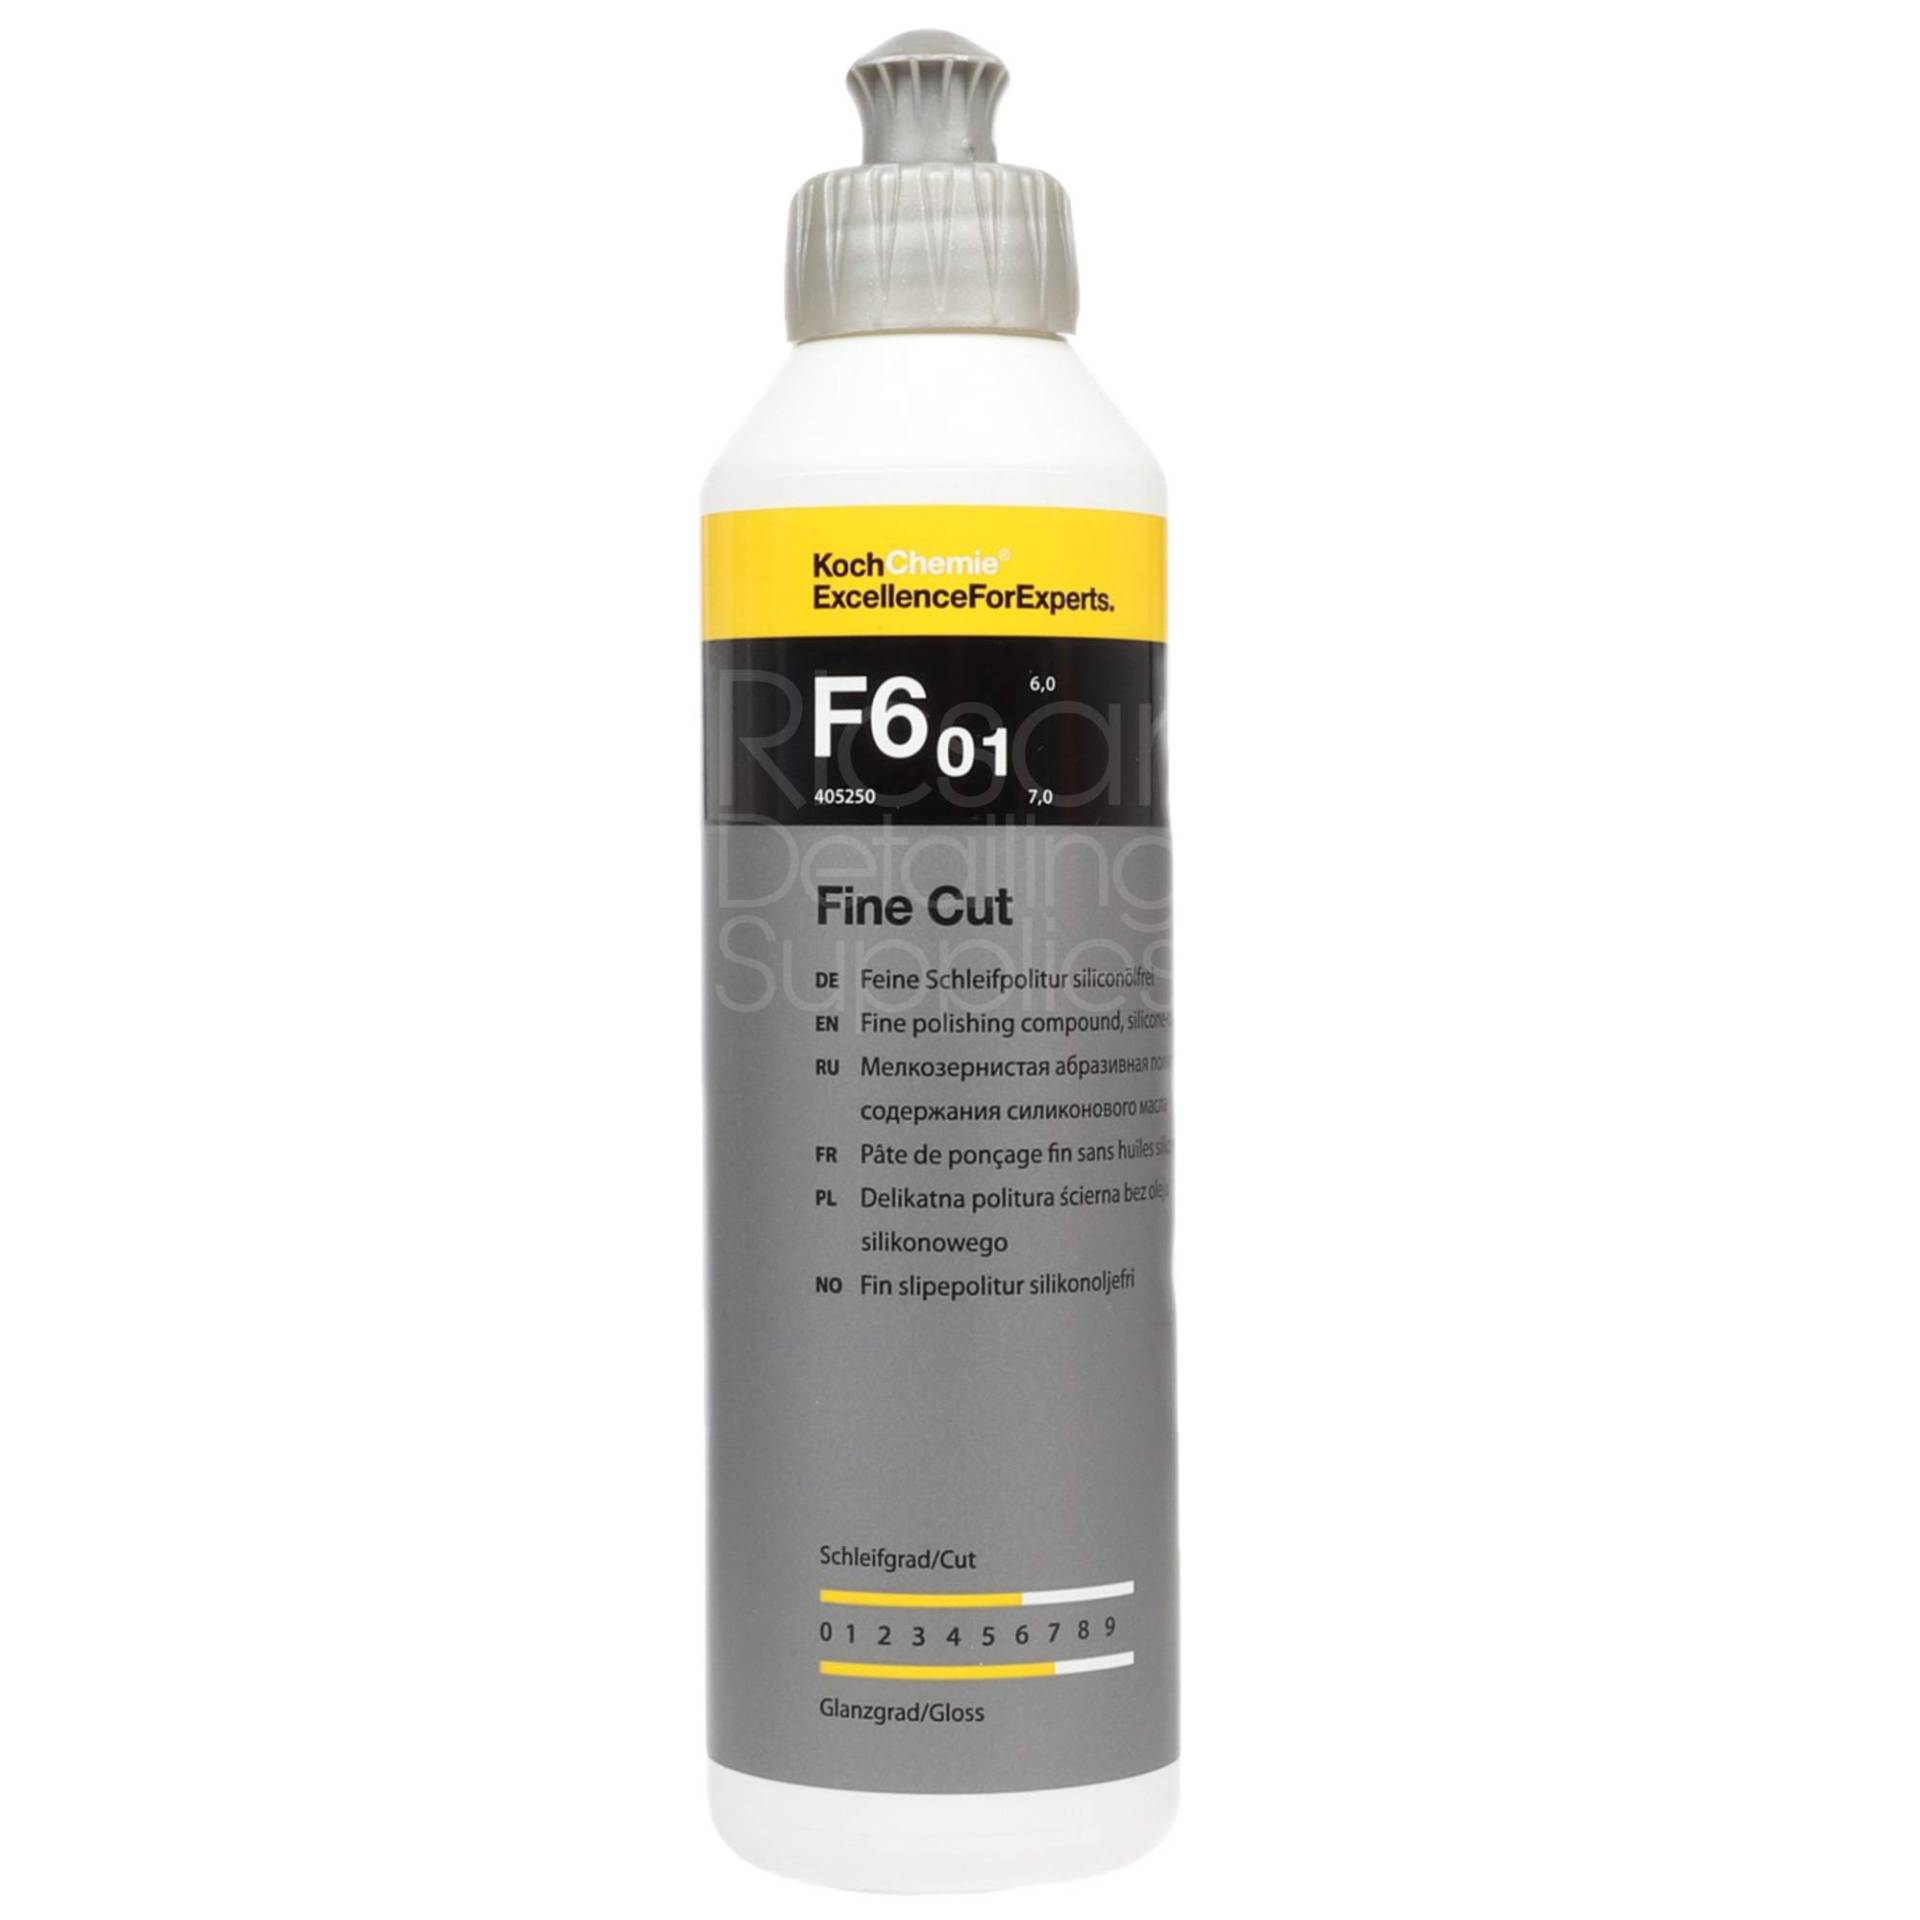 Koch Chemie Fine Cut F6.01 | Feine Schleifpolitur silikonölfrei 250 ml von KOCHCHEMIE